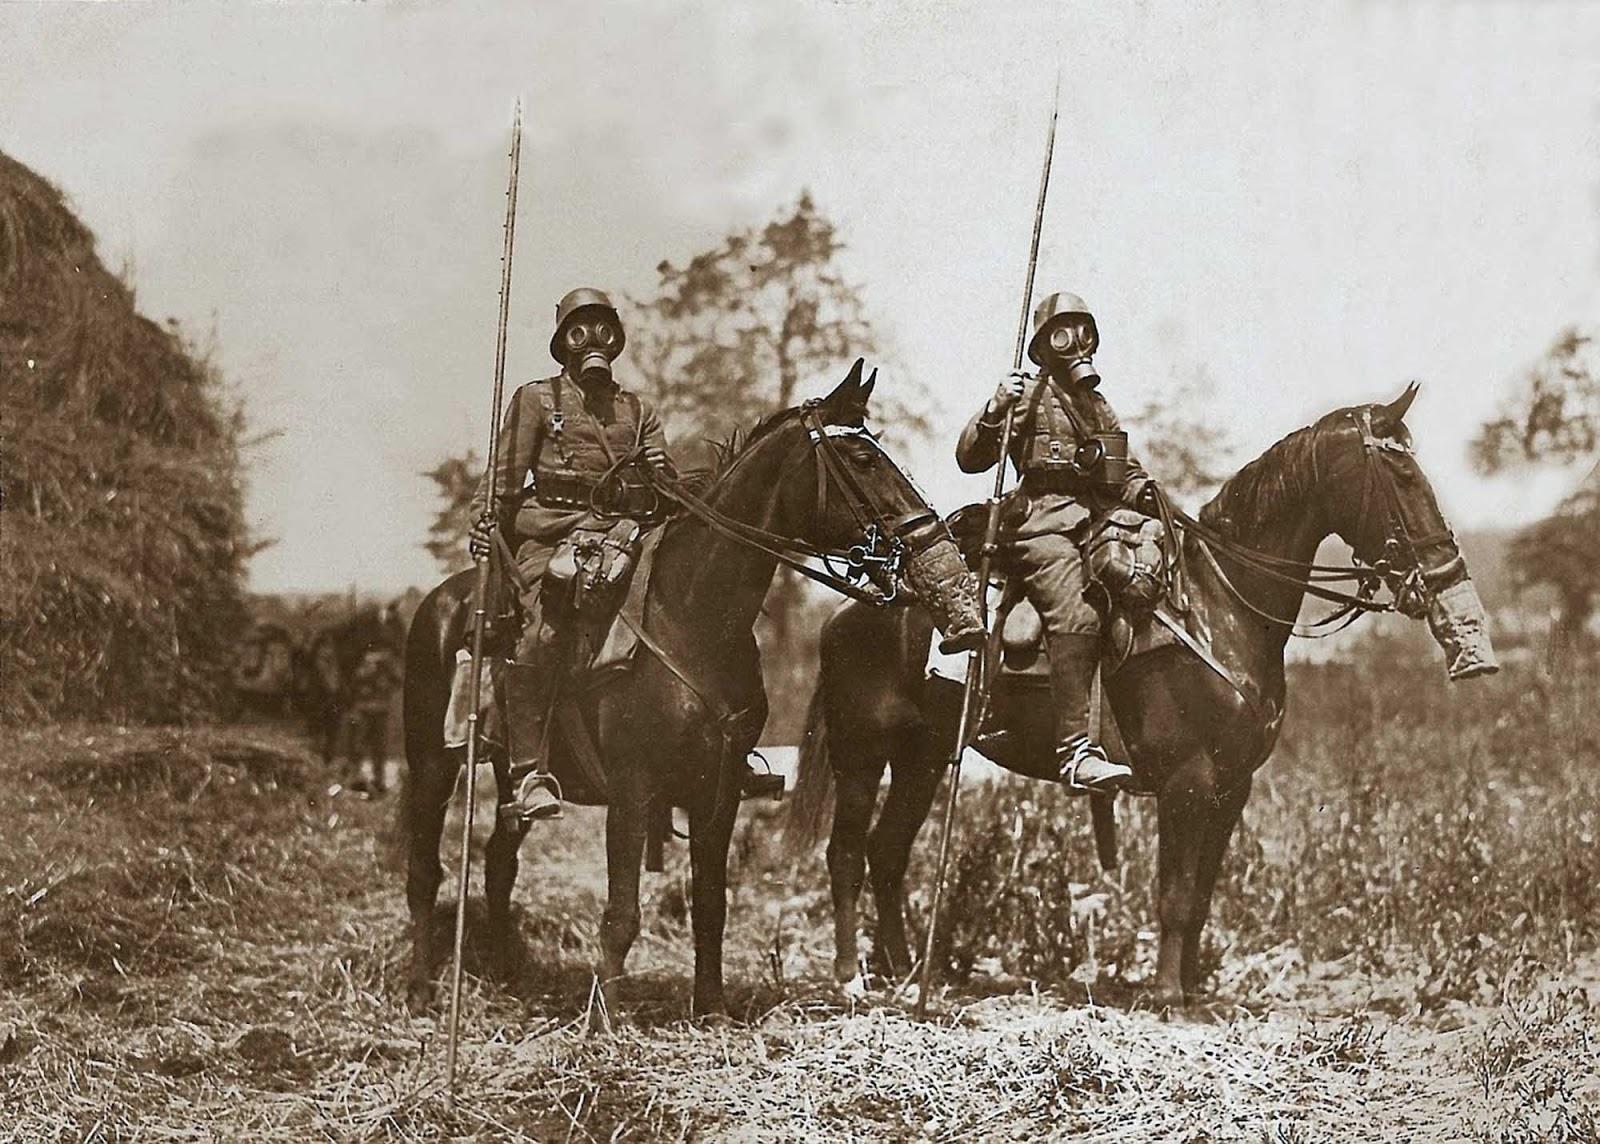 Allemand patrouille de cavalerie dans les masques à gaz et la réalisation de lances, 1918